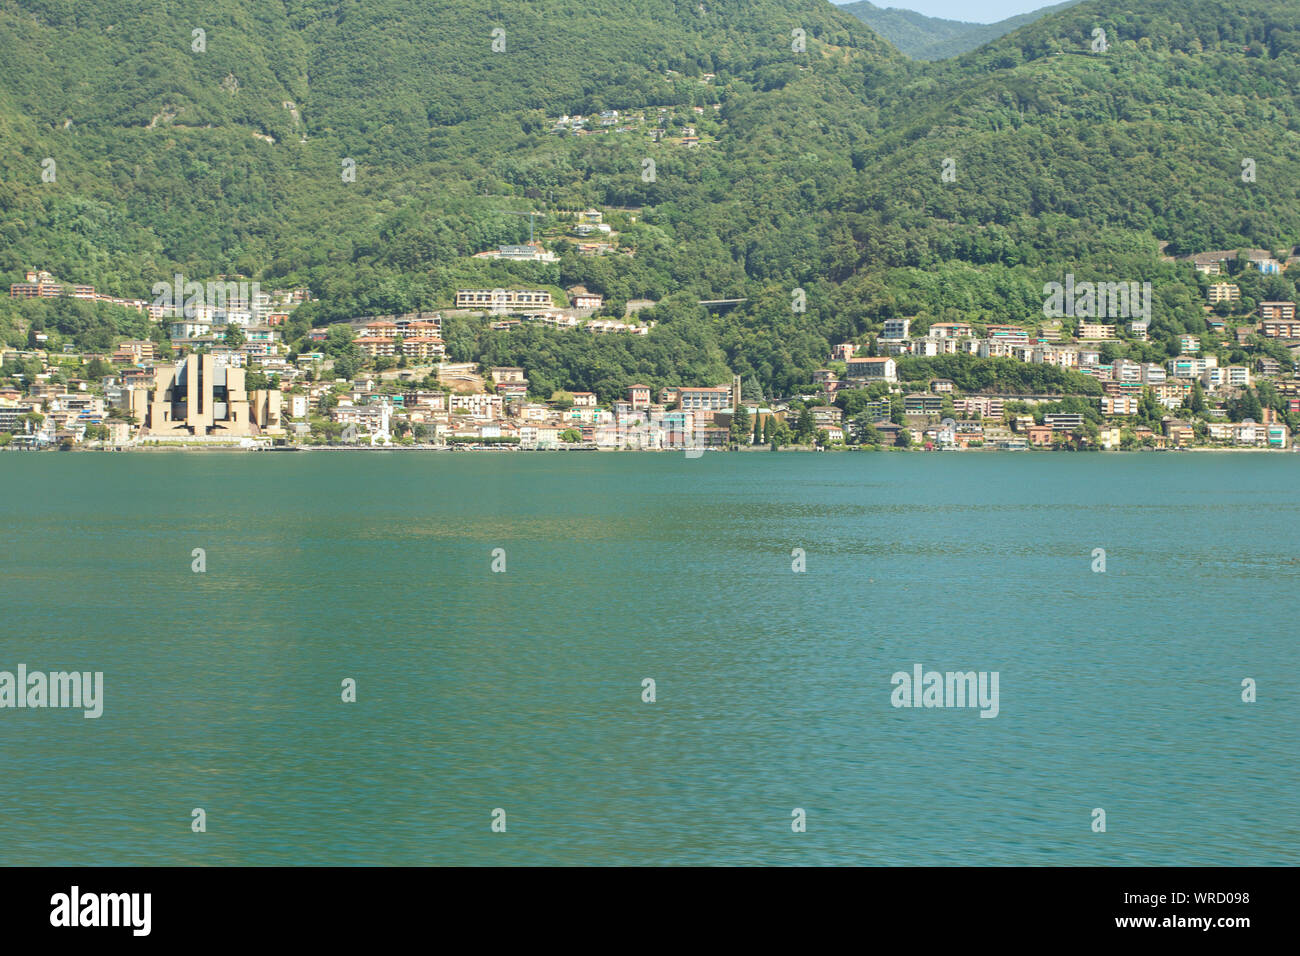 Campione d'Italia mit seinem Casino (Europas größte Casino), eine italienische Enklave umgeben von den Schweizer Kanton Tessin (Luganer See) Stockfoto